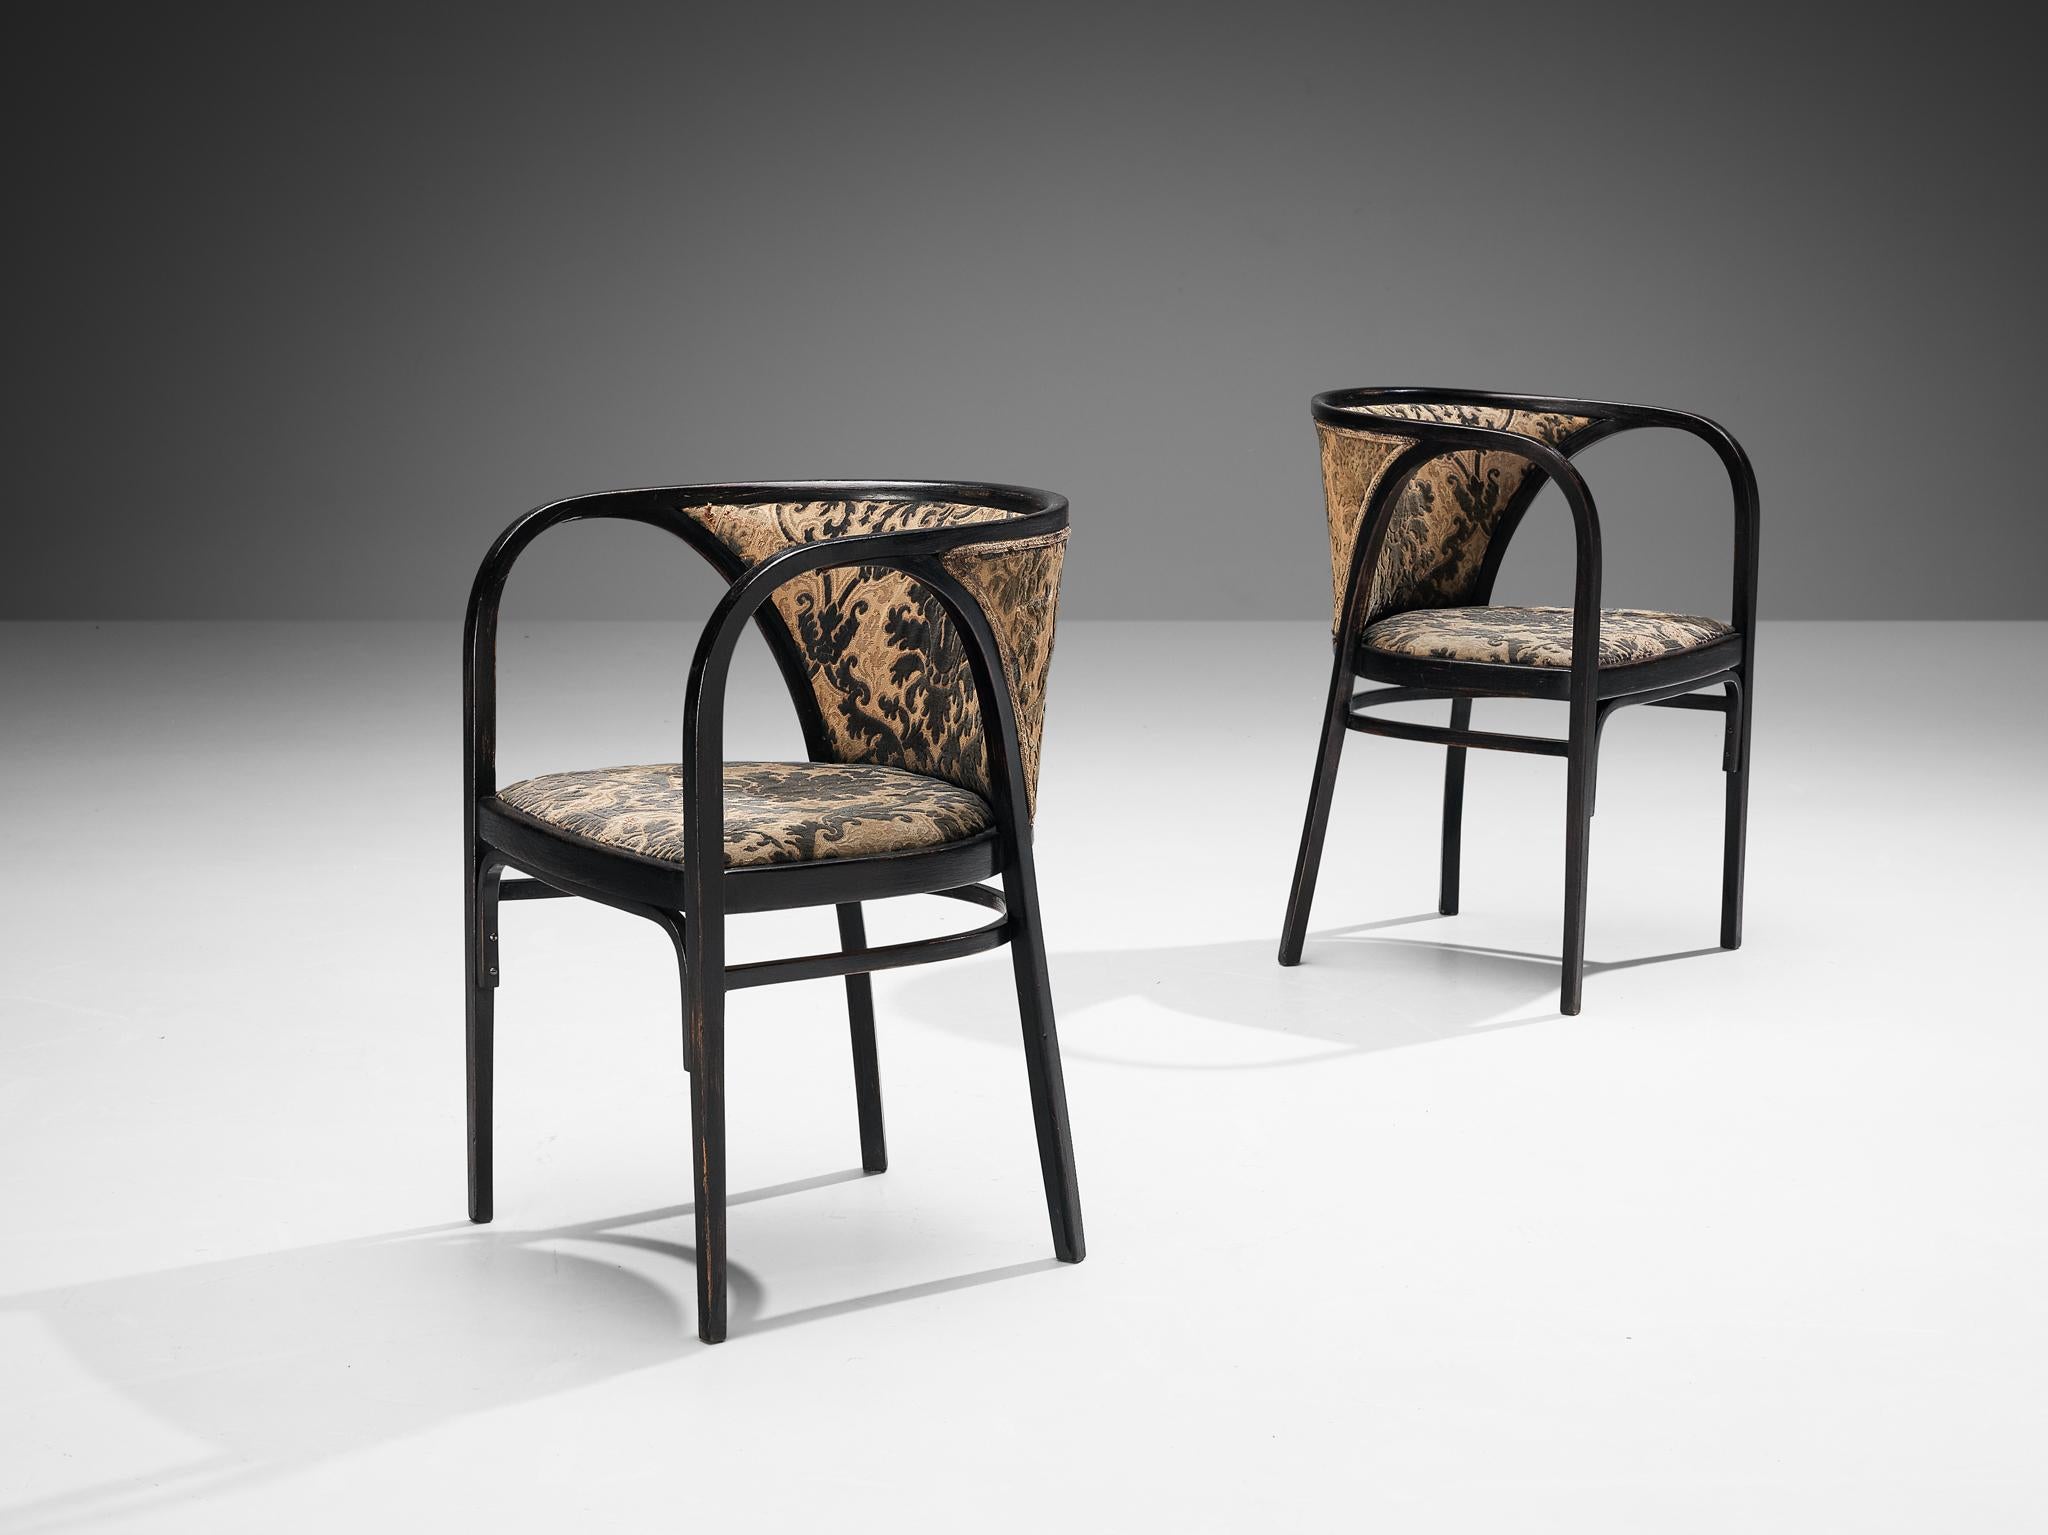 Thonet, Paar Sessel, Bugholz und Stoff, Österreich, 1920er Jahre

Ein Sesselpaar, dessen Gestell aus elegant geschwungenen Linien und runden Kanten besteht, die dem Sessel ein skulpturales Aussehen verleihen. Die Polsterung von Sitz und Rückenlehne